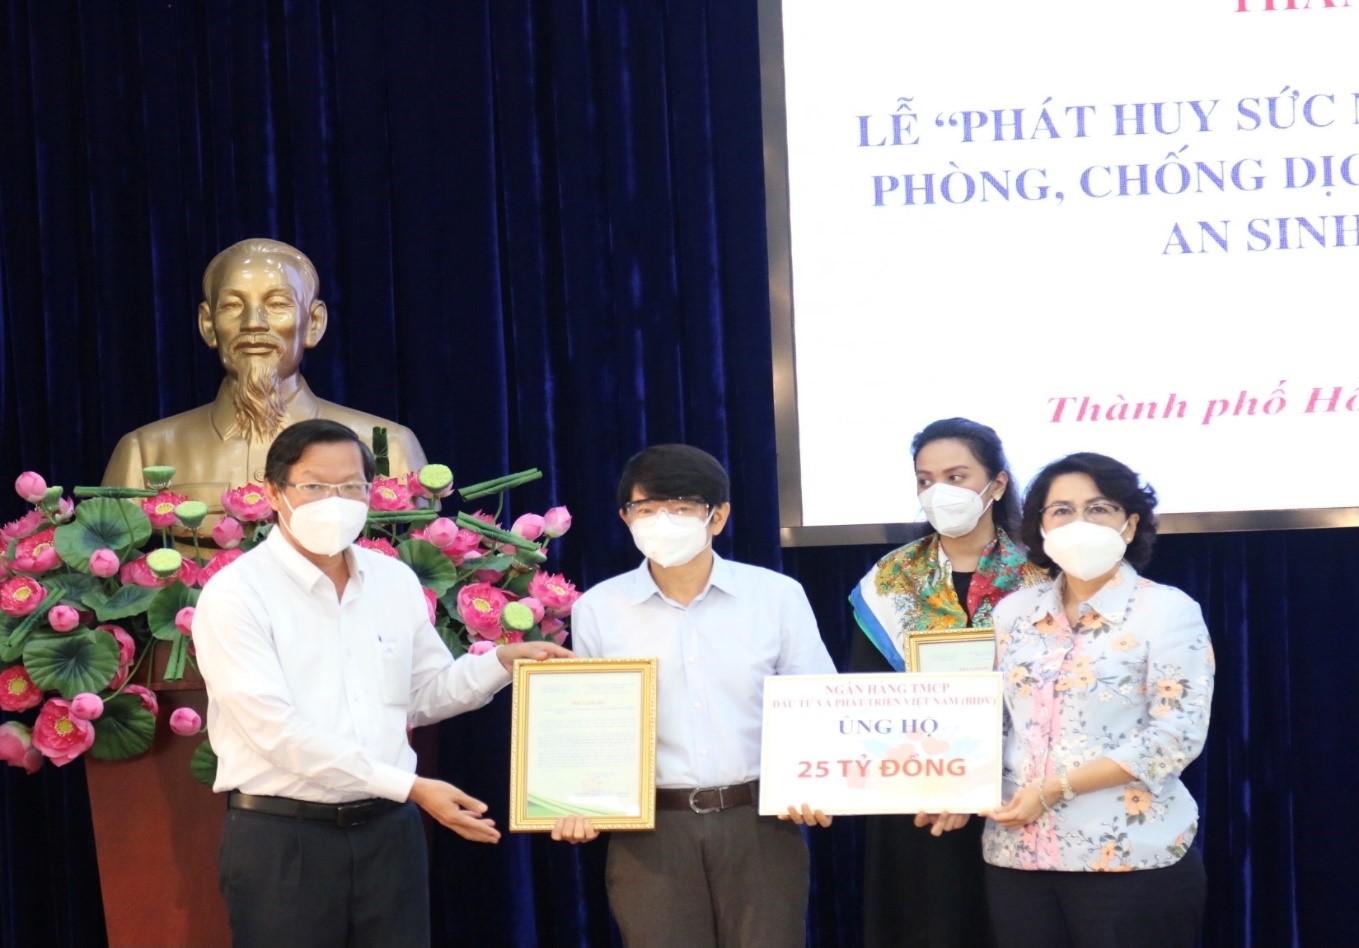 Ngân hàng TMCP Đầu tư và Phát triển Việt Nam ủng hộ Thành phố Hồ Chí Minh phòng chống Covid-19 trị giá  25 tỷ đồng tại Lễ ra mắt Trung tâm An sinh xã hội Thành phố Hồ Chí Minh.